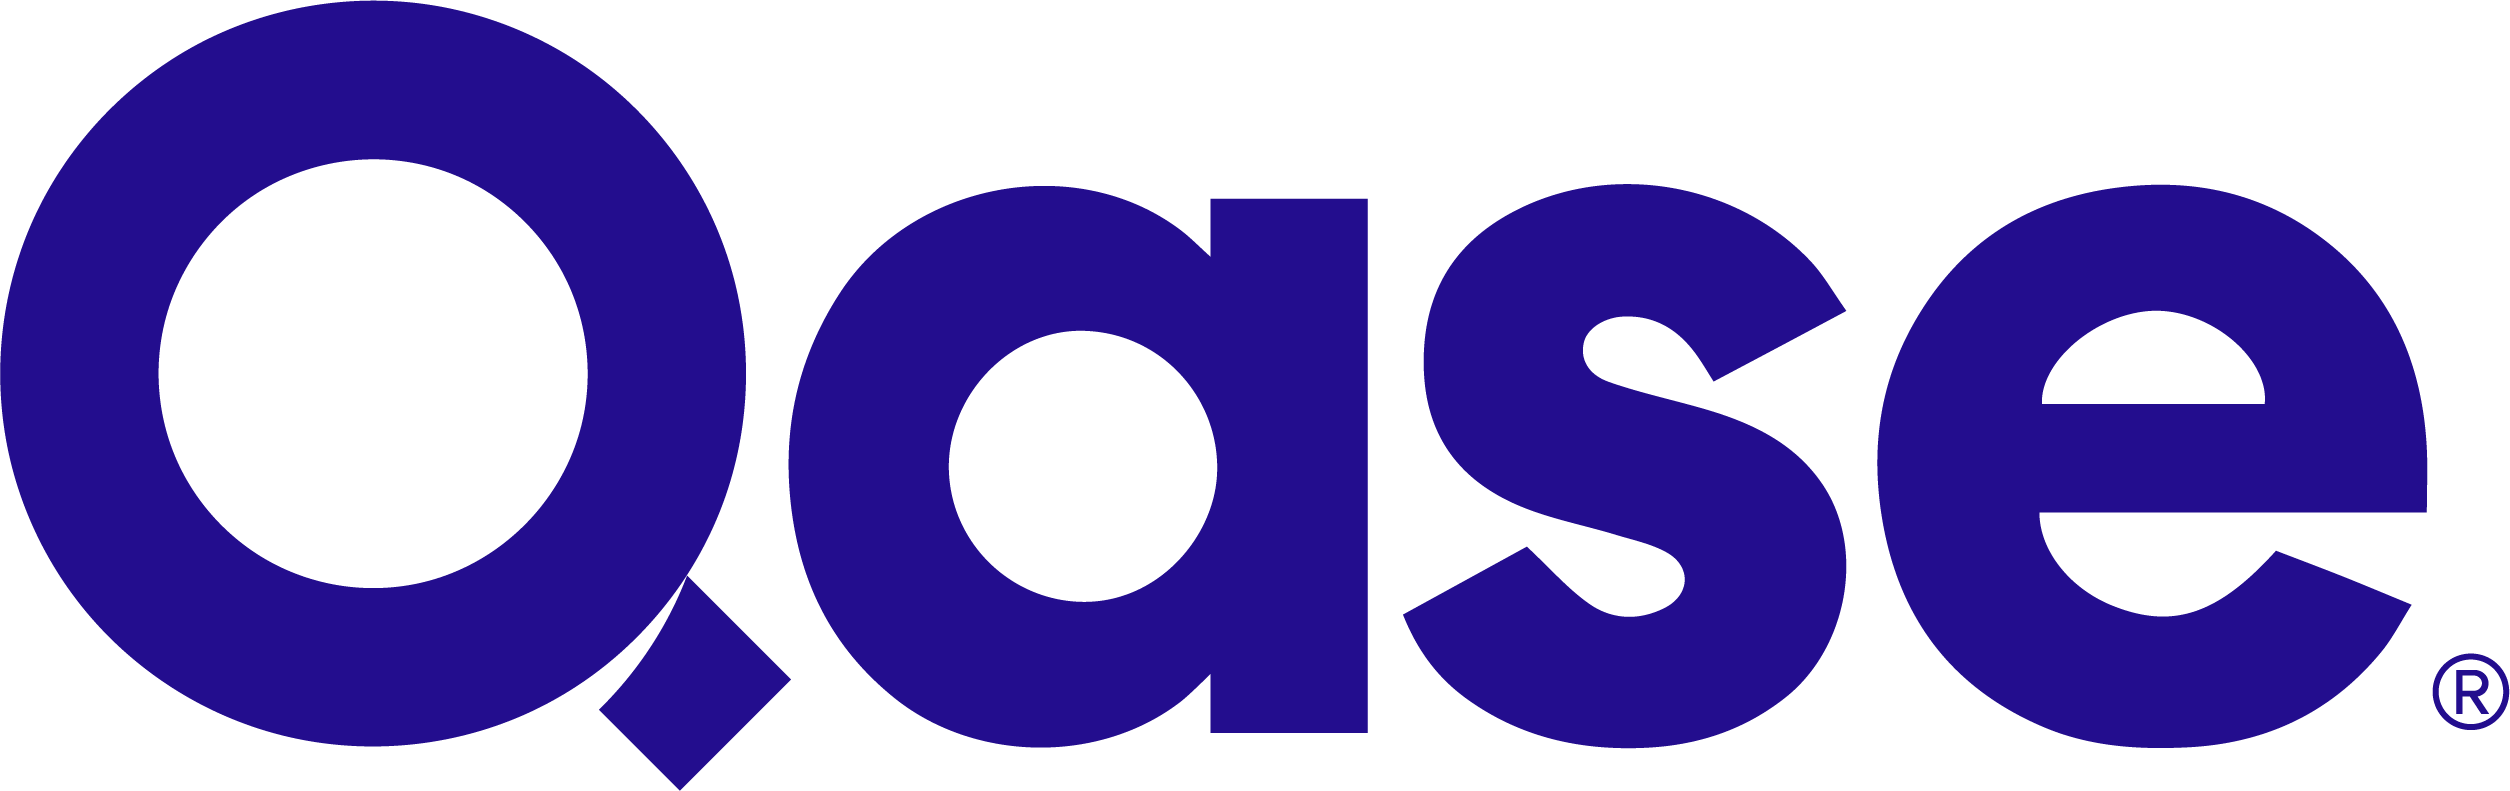 Qase-Logo-Color (1).png